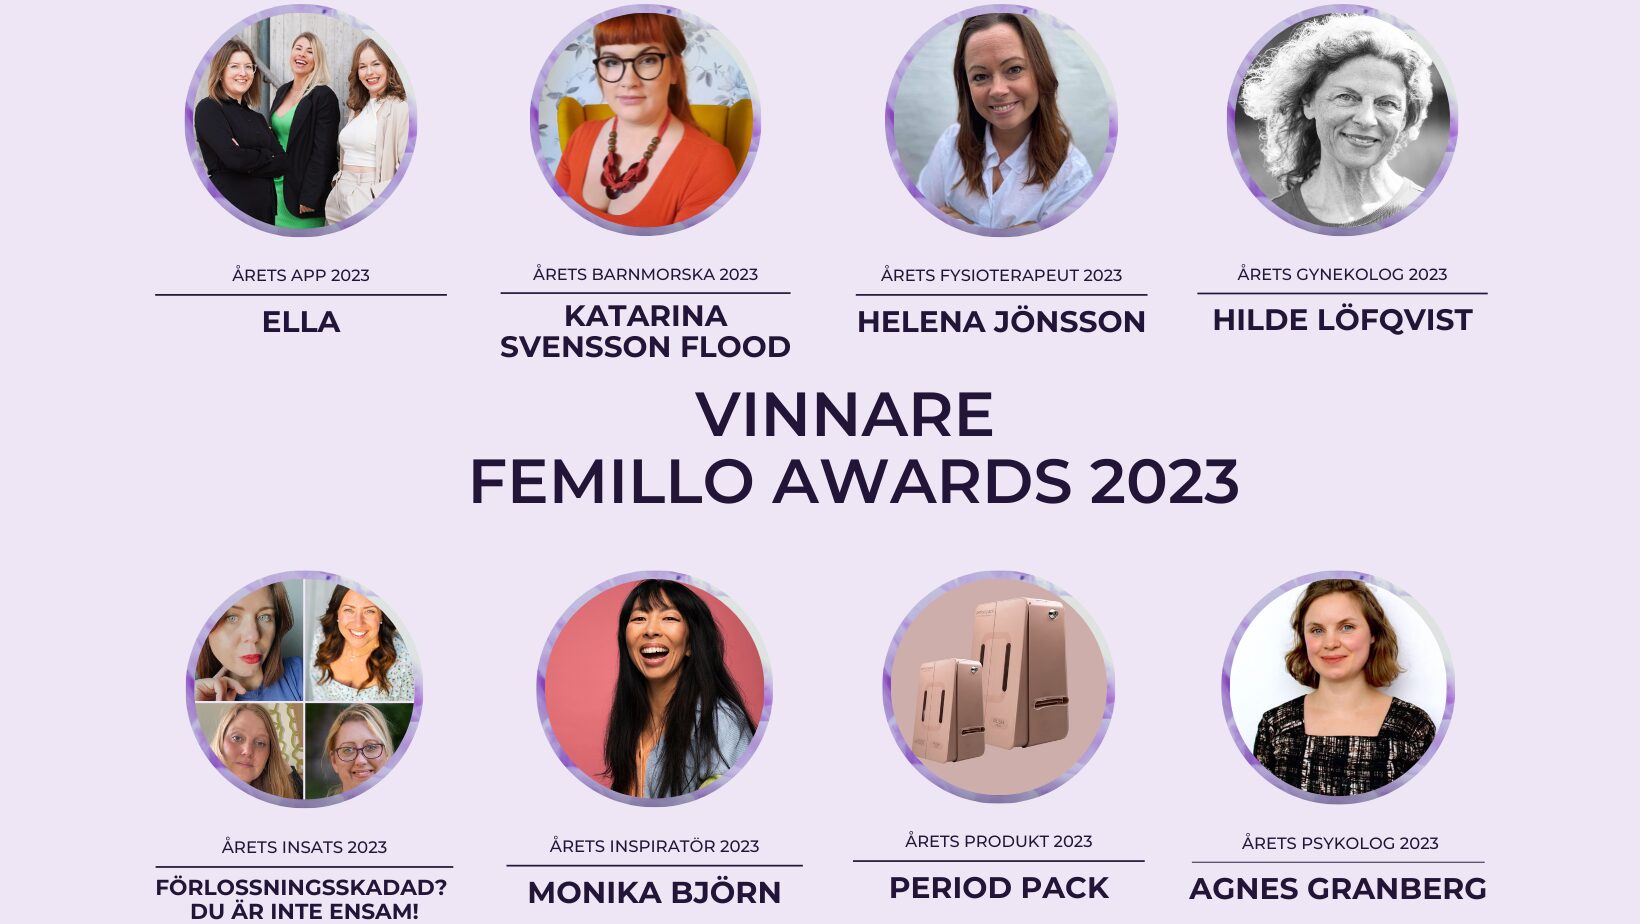 Winners of the Femillo Awards 2023